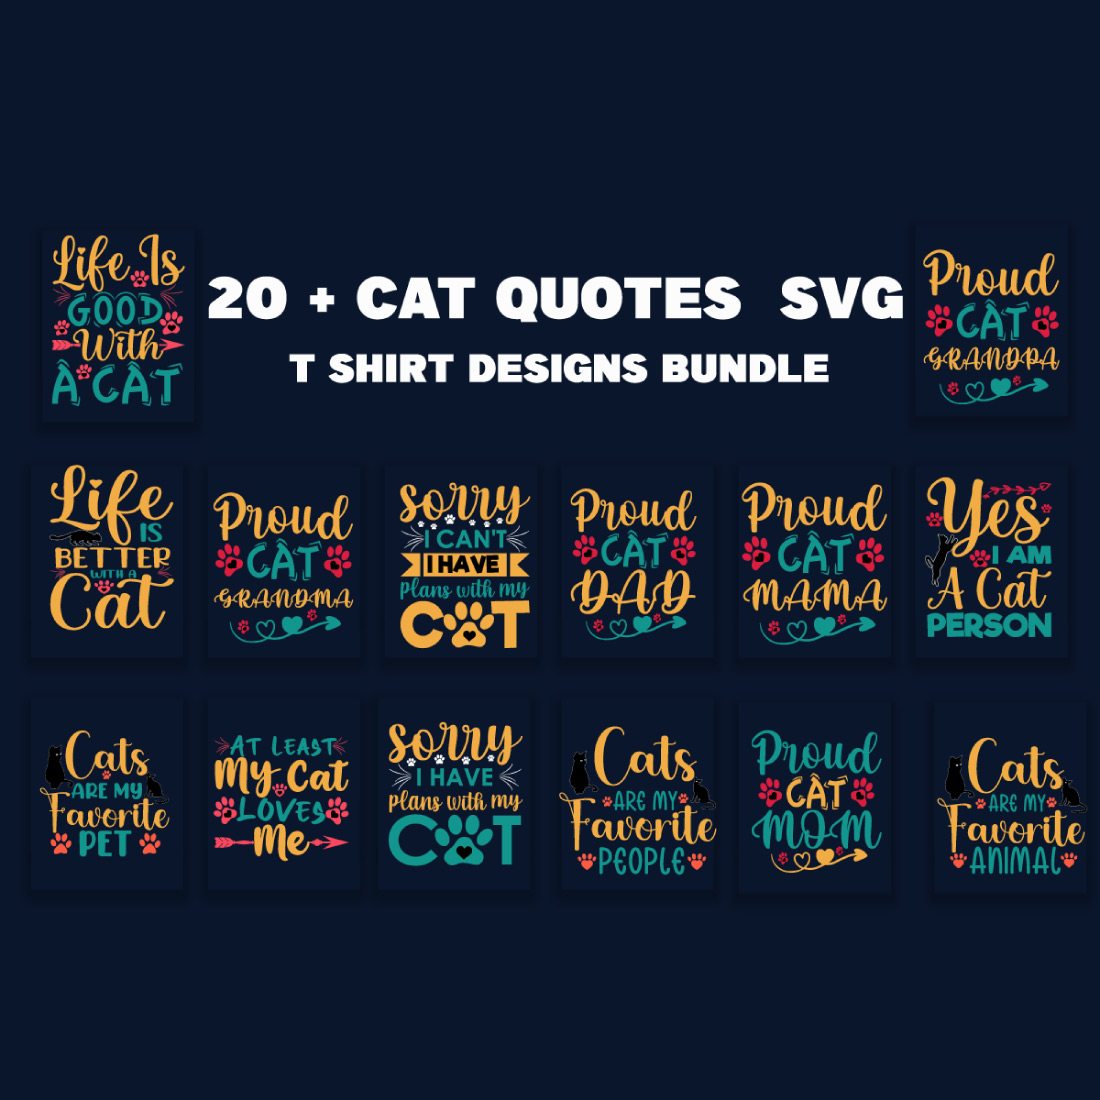 Cat Quotes SVG T-Shirt Designs Bundle cover image.